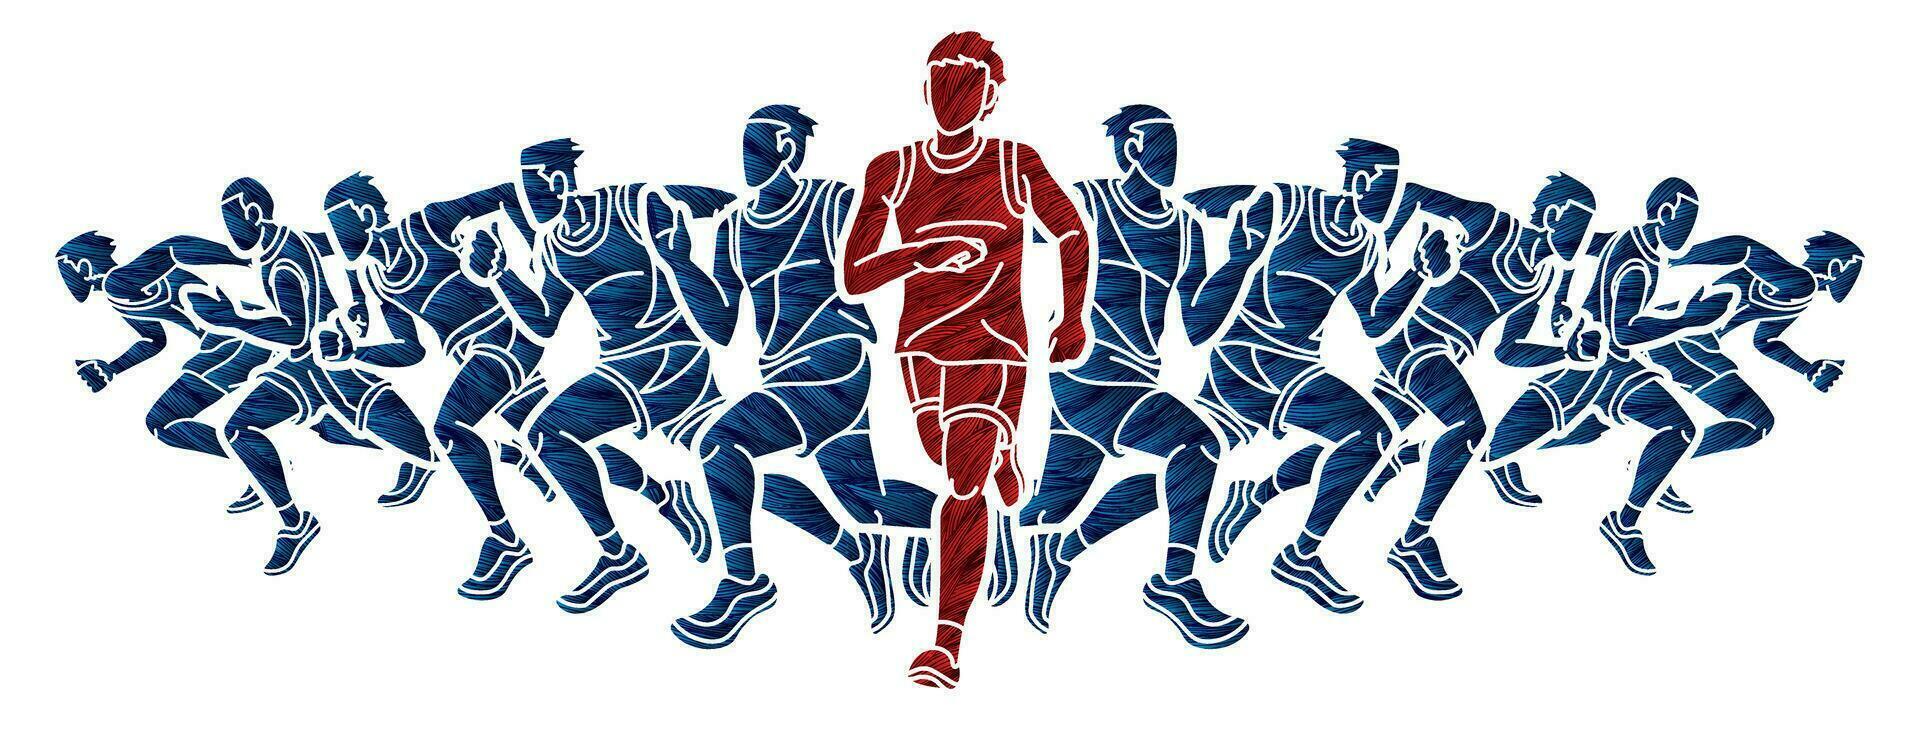 Group of Men Start Running Runner Action vector